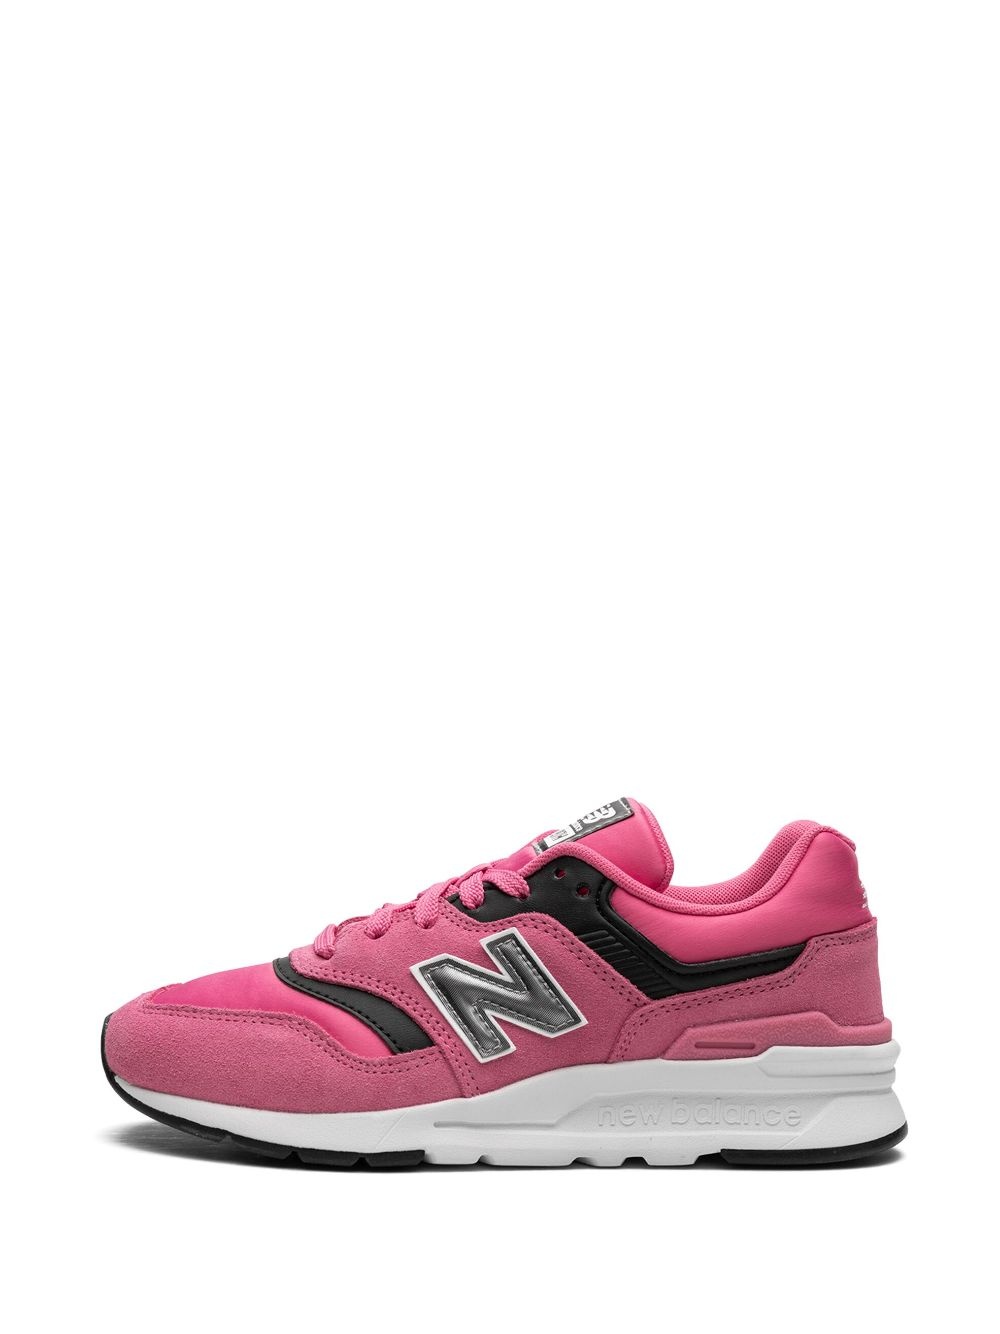 997 "Pink" low-top sneakers - 5